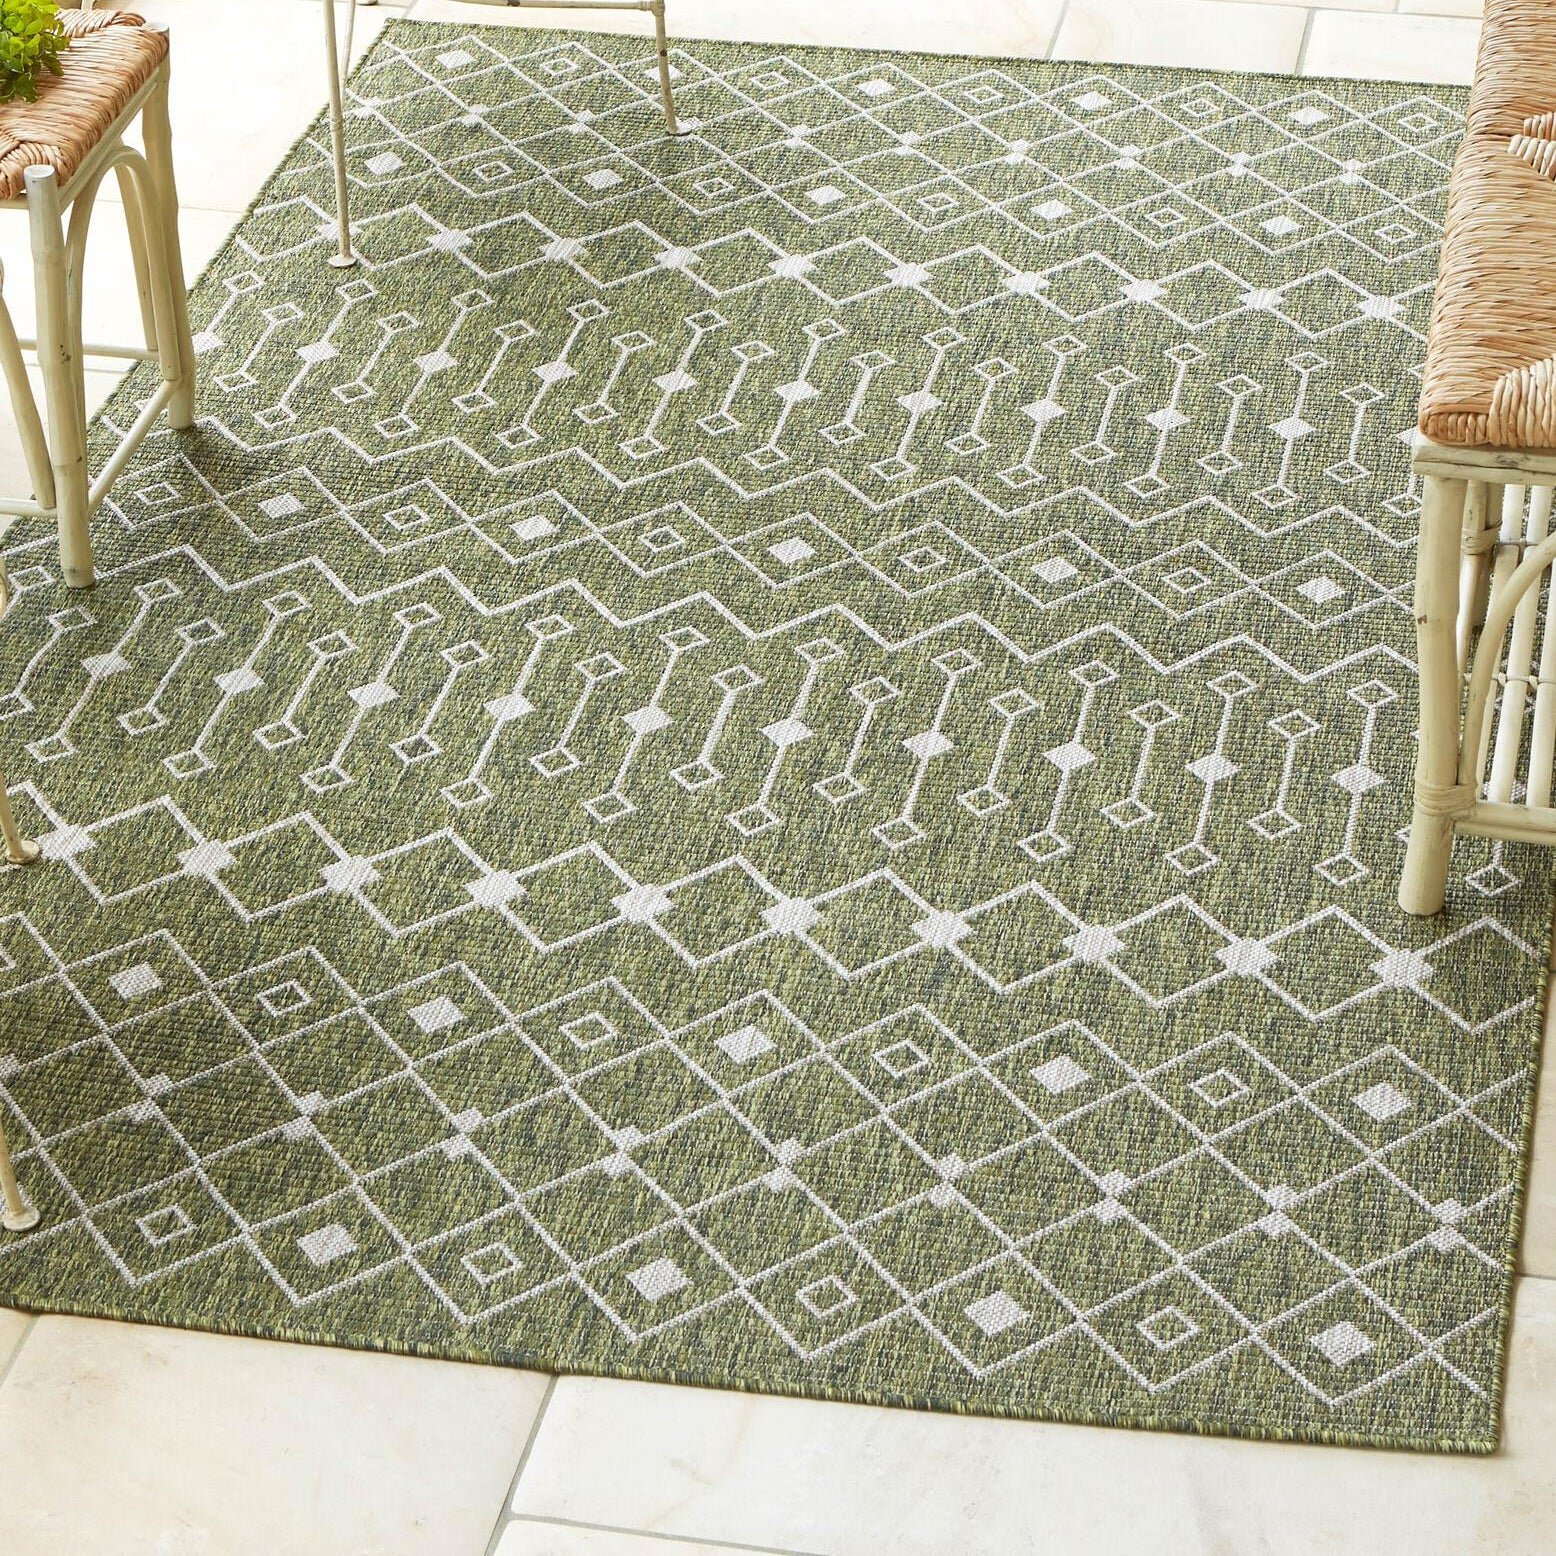 Outdoor Rugs Small Large Indoor Modern Carpet Hard Wearing Garden Area Floor Mat 